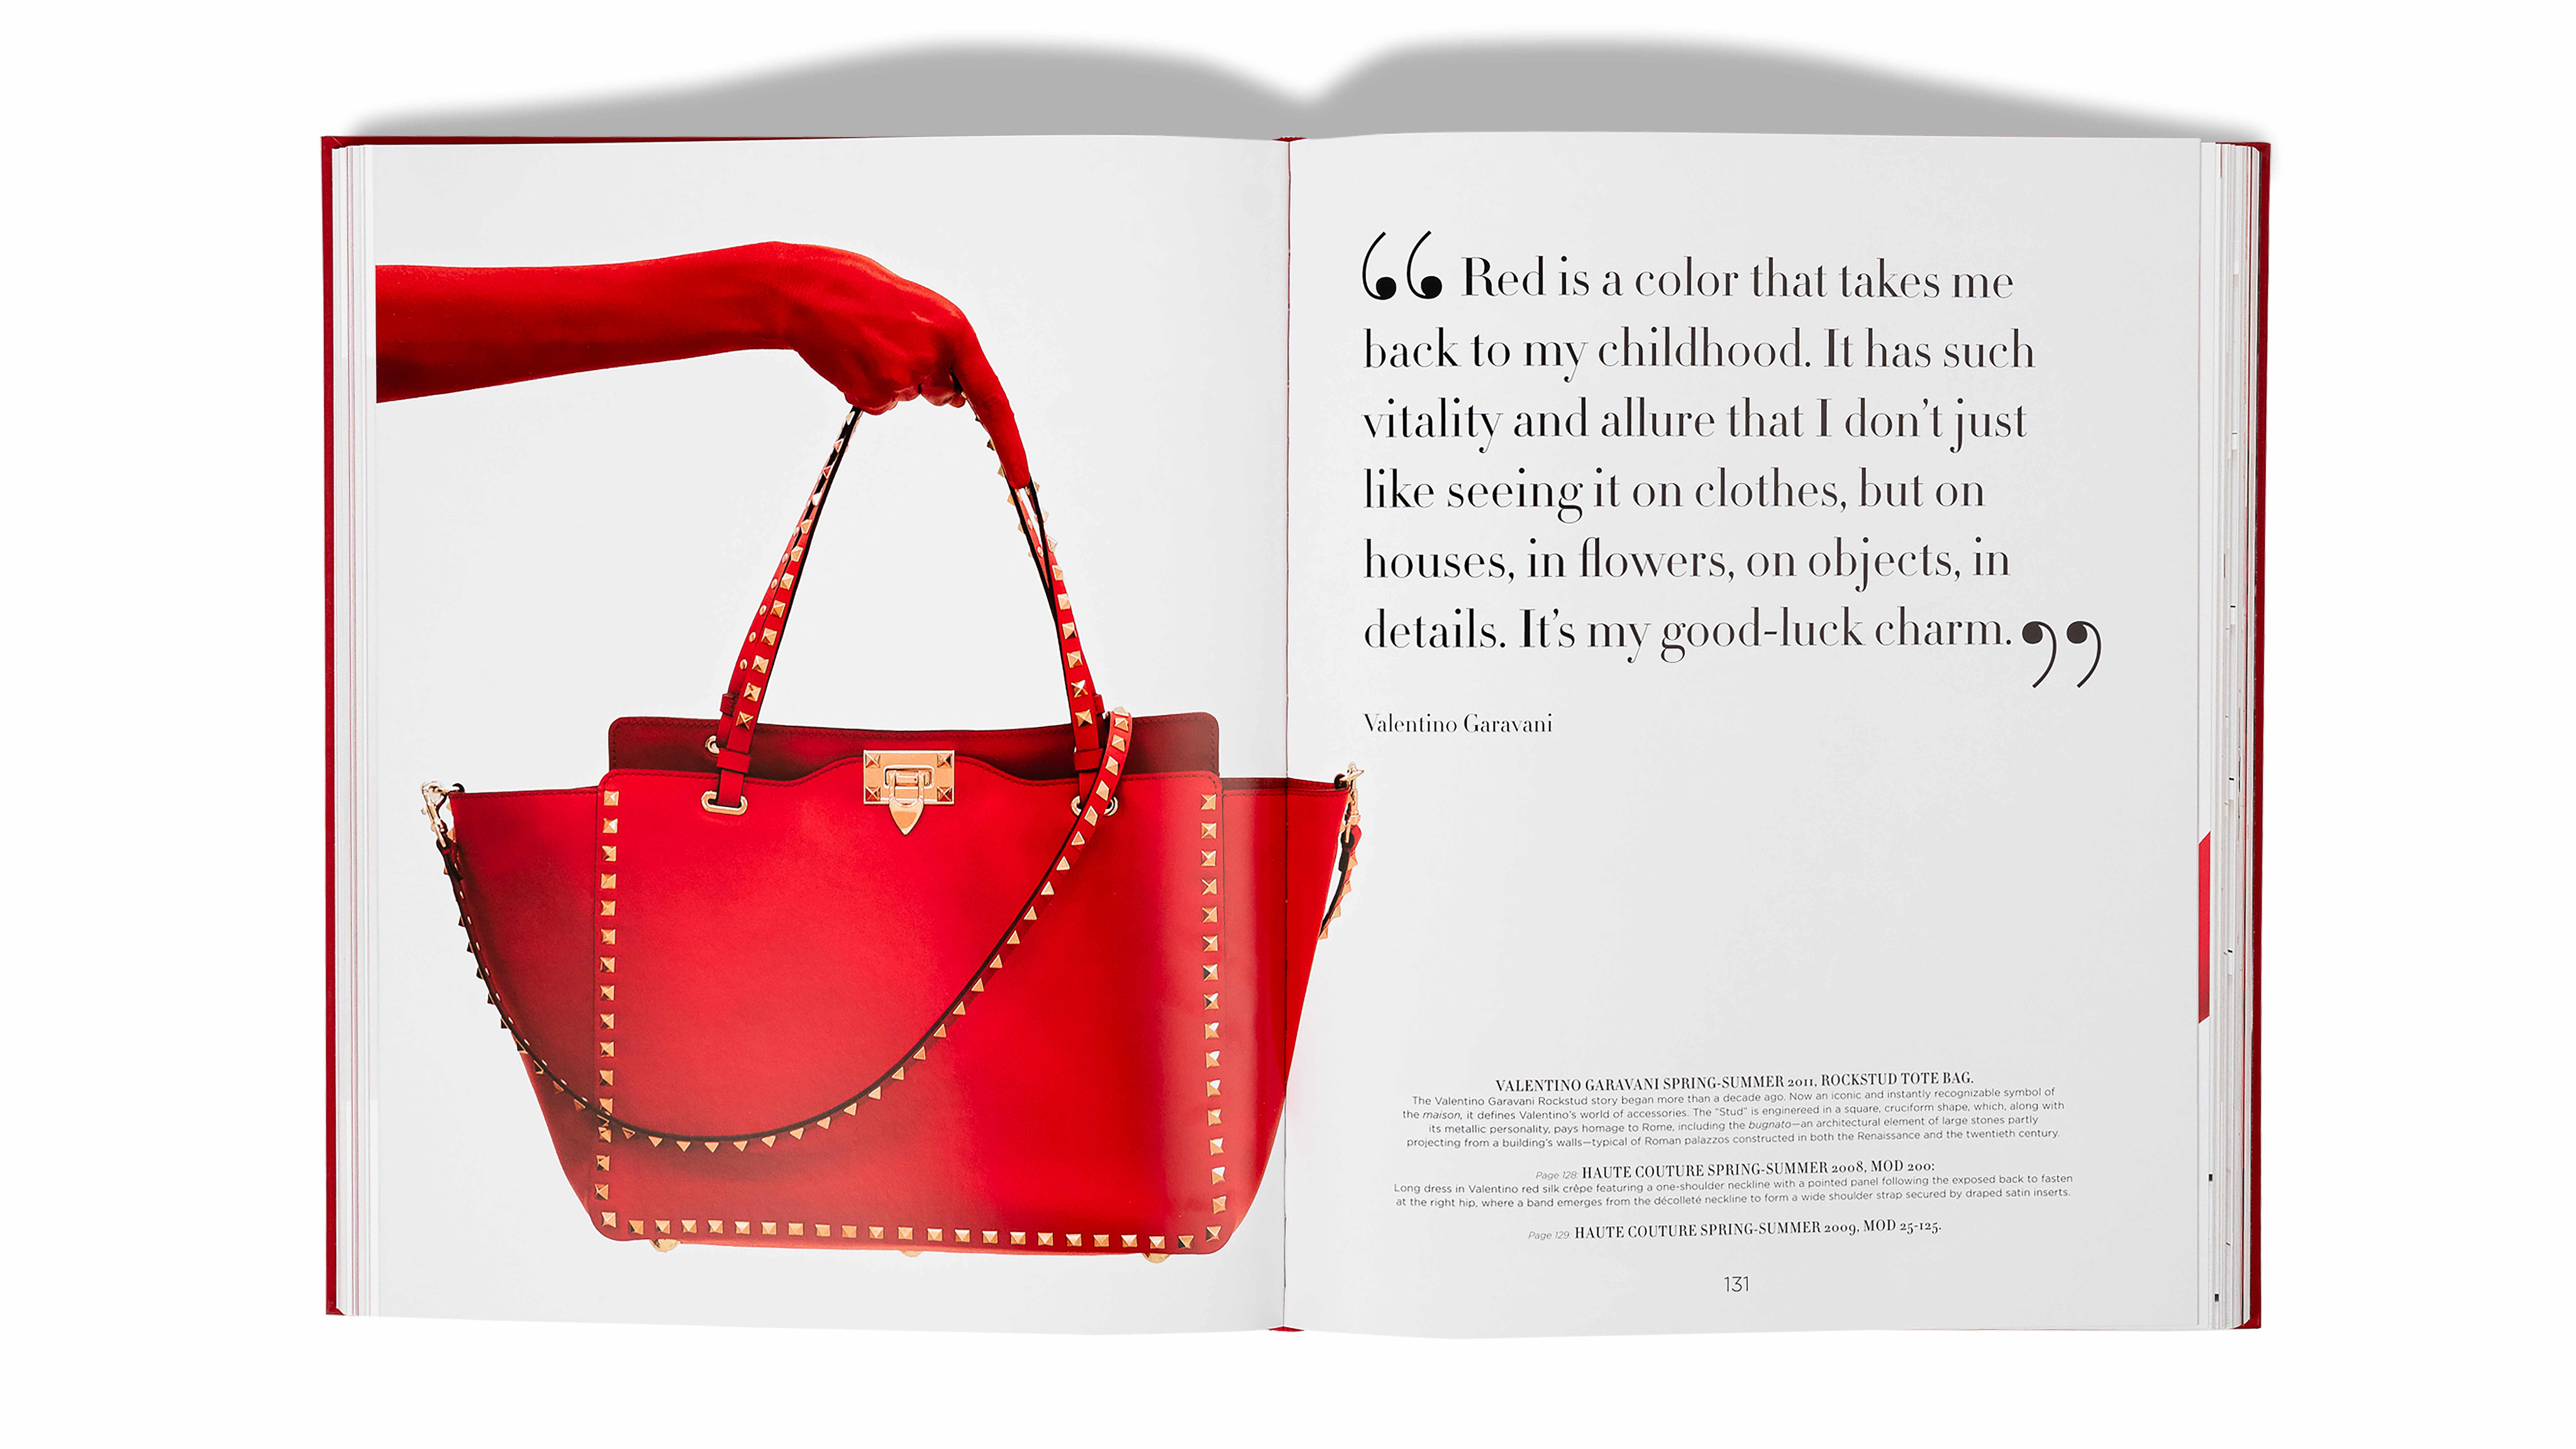 Red Valentino inaugura seu primeiro endereço no Brasil - Harper's Bazaar »  Moda, beleza e estilo de vida em um só site